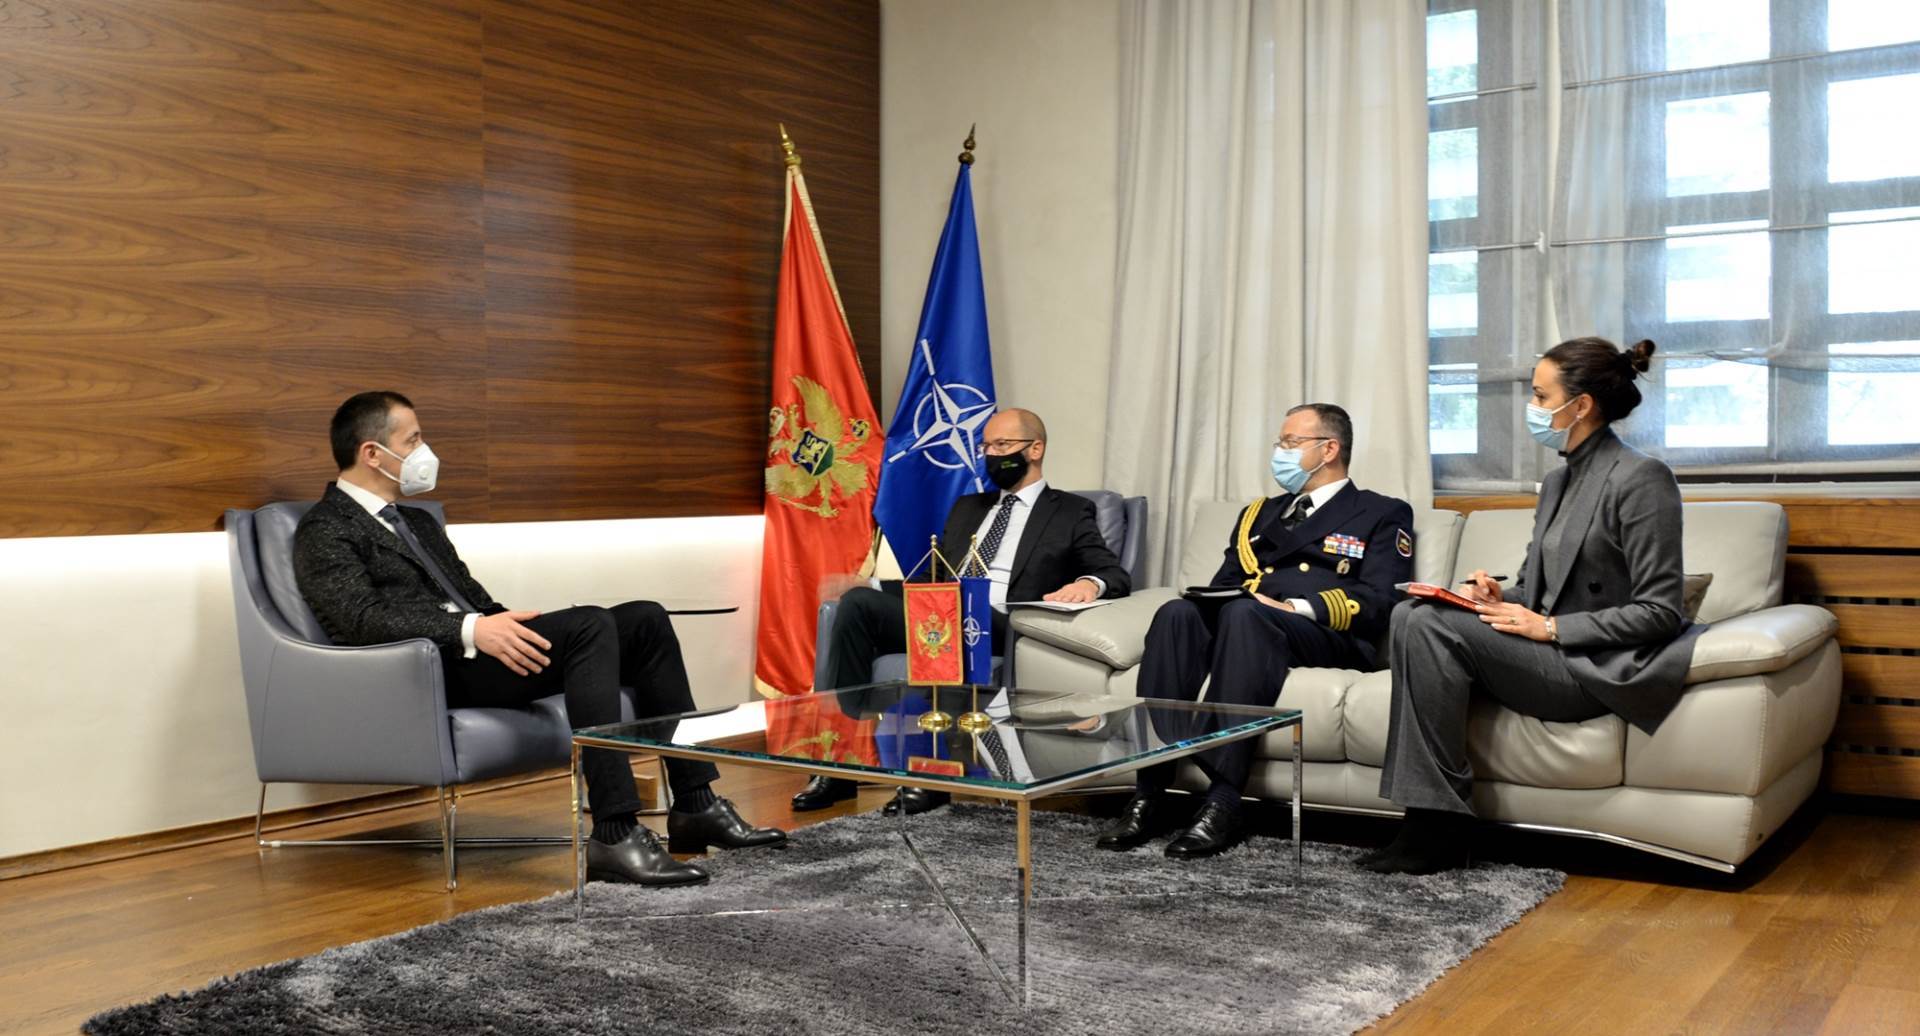  Crna Gora i Slovenija posvećene nastavku aktivnosti na planu jačanja odbrane  